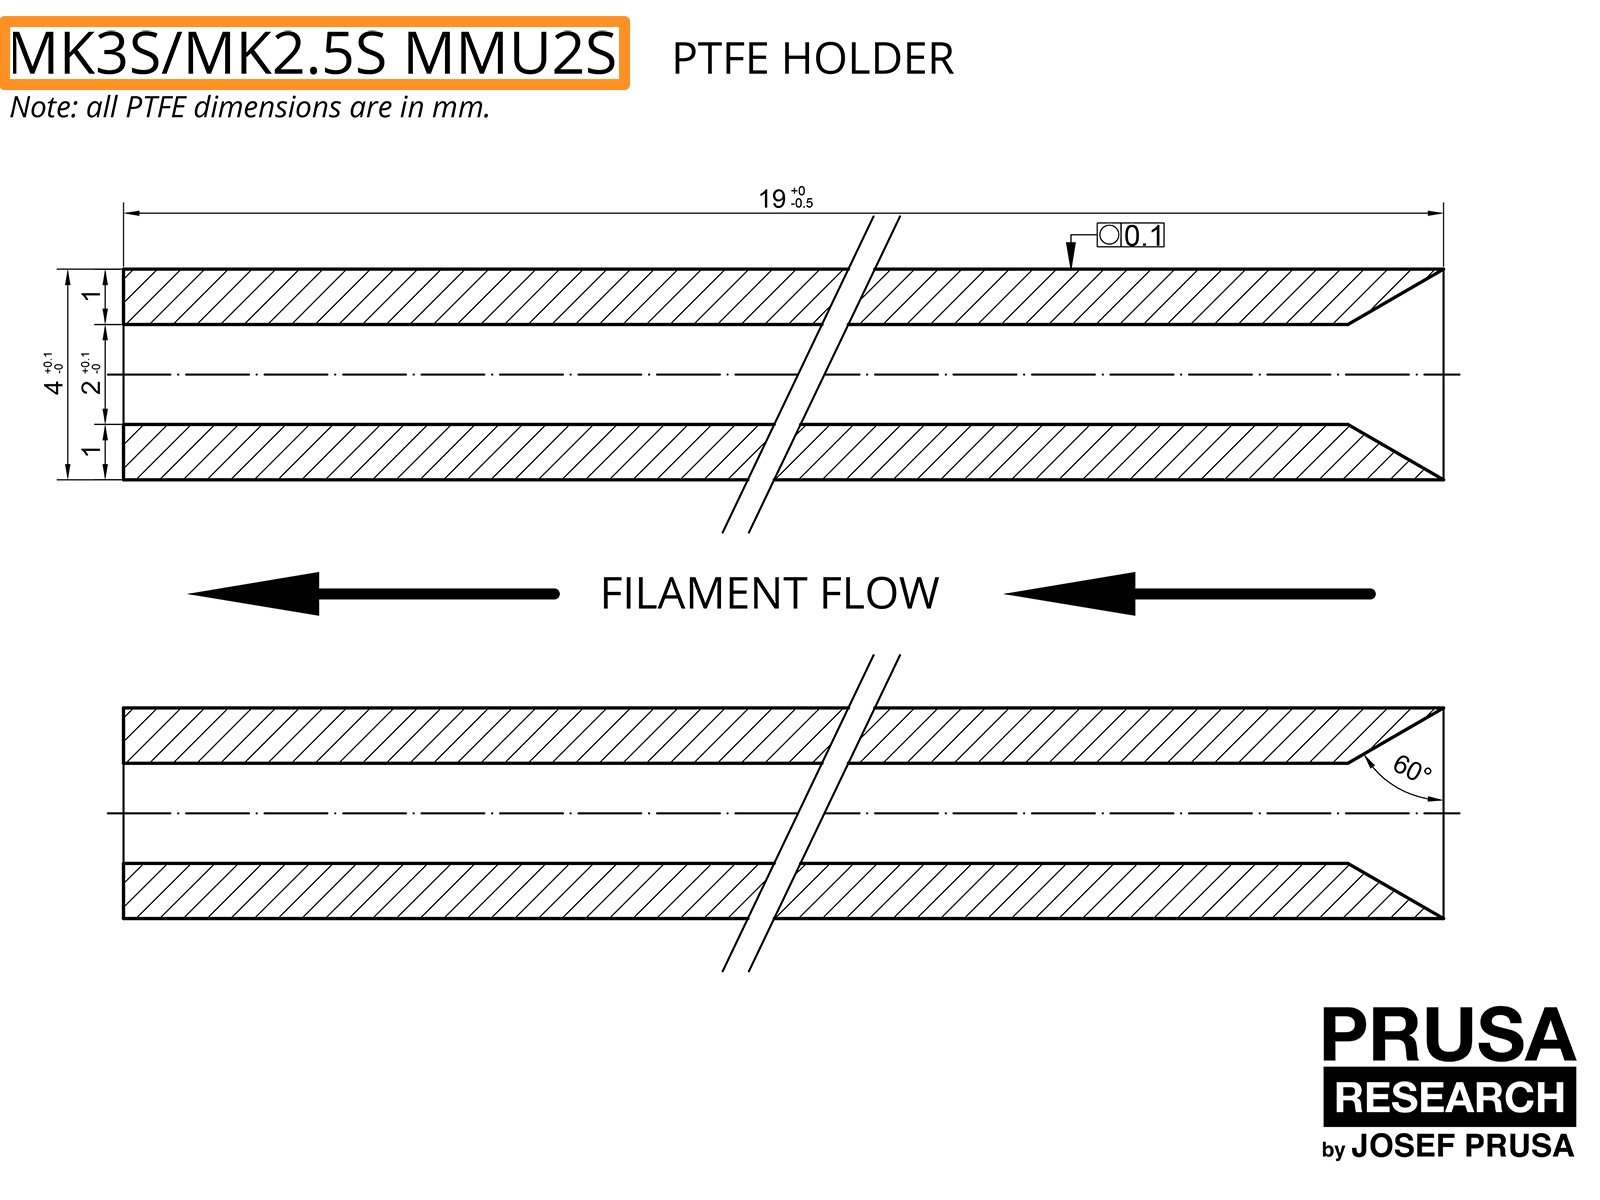 PTFE für den MK3S/MK2.5S MMU2S (Teil 1)